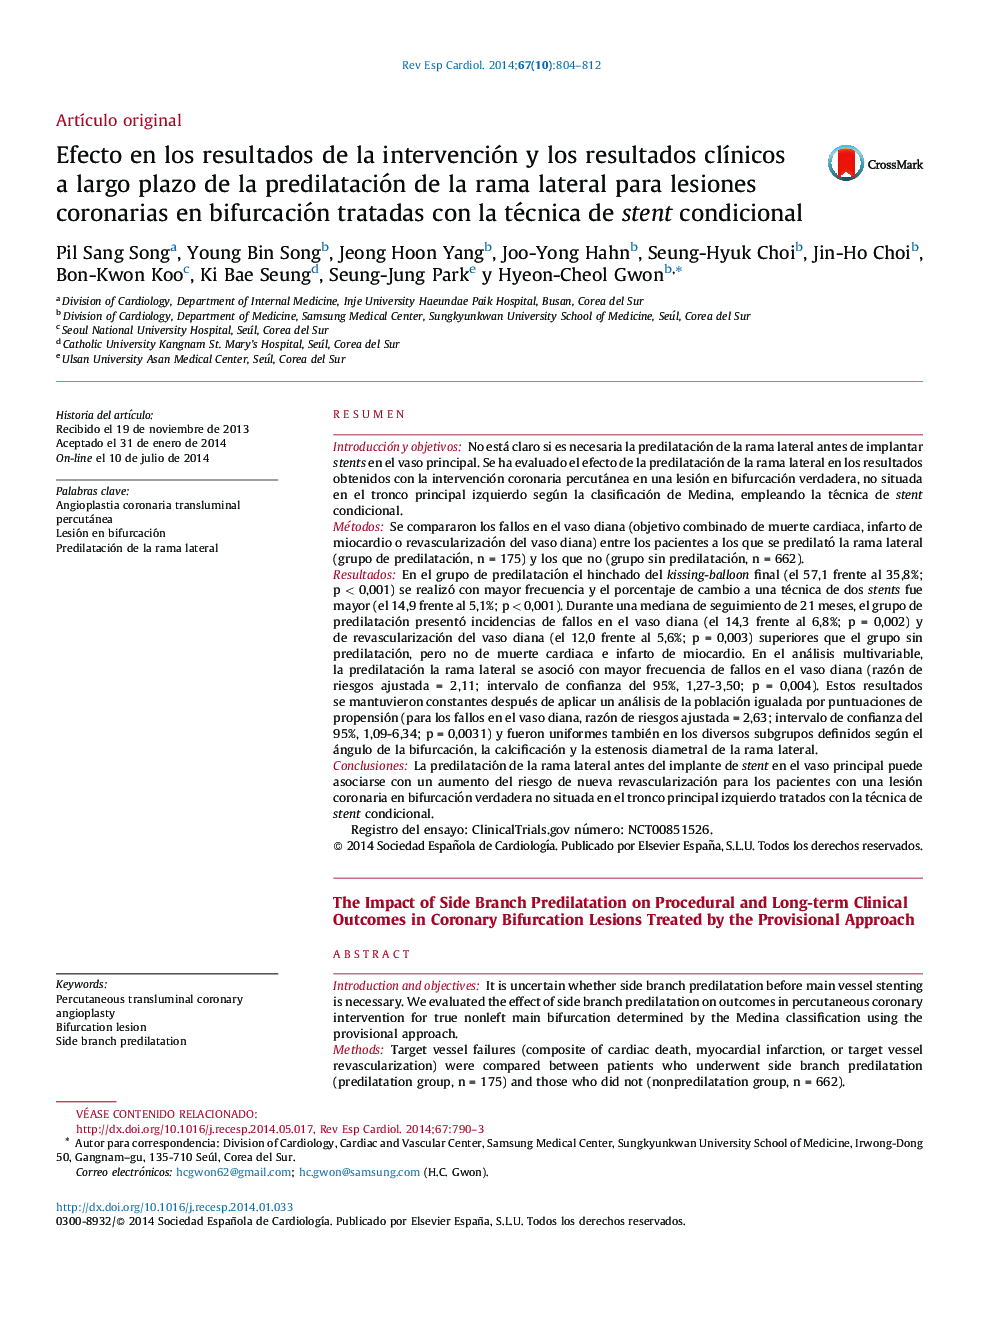 Efecto en los resultados de la intervención y los resultados clÃ­nicos a largo plazo de la predilatación de la rama lateral para lesiones coronarias en bifurcación tratadas con la técnica de stent condicional